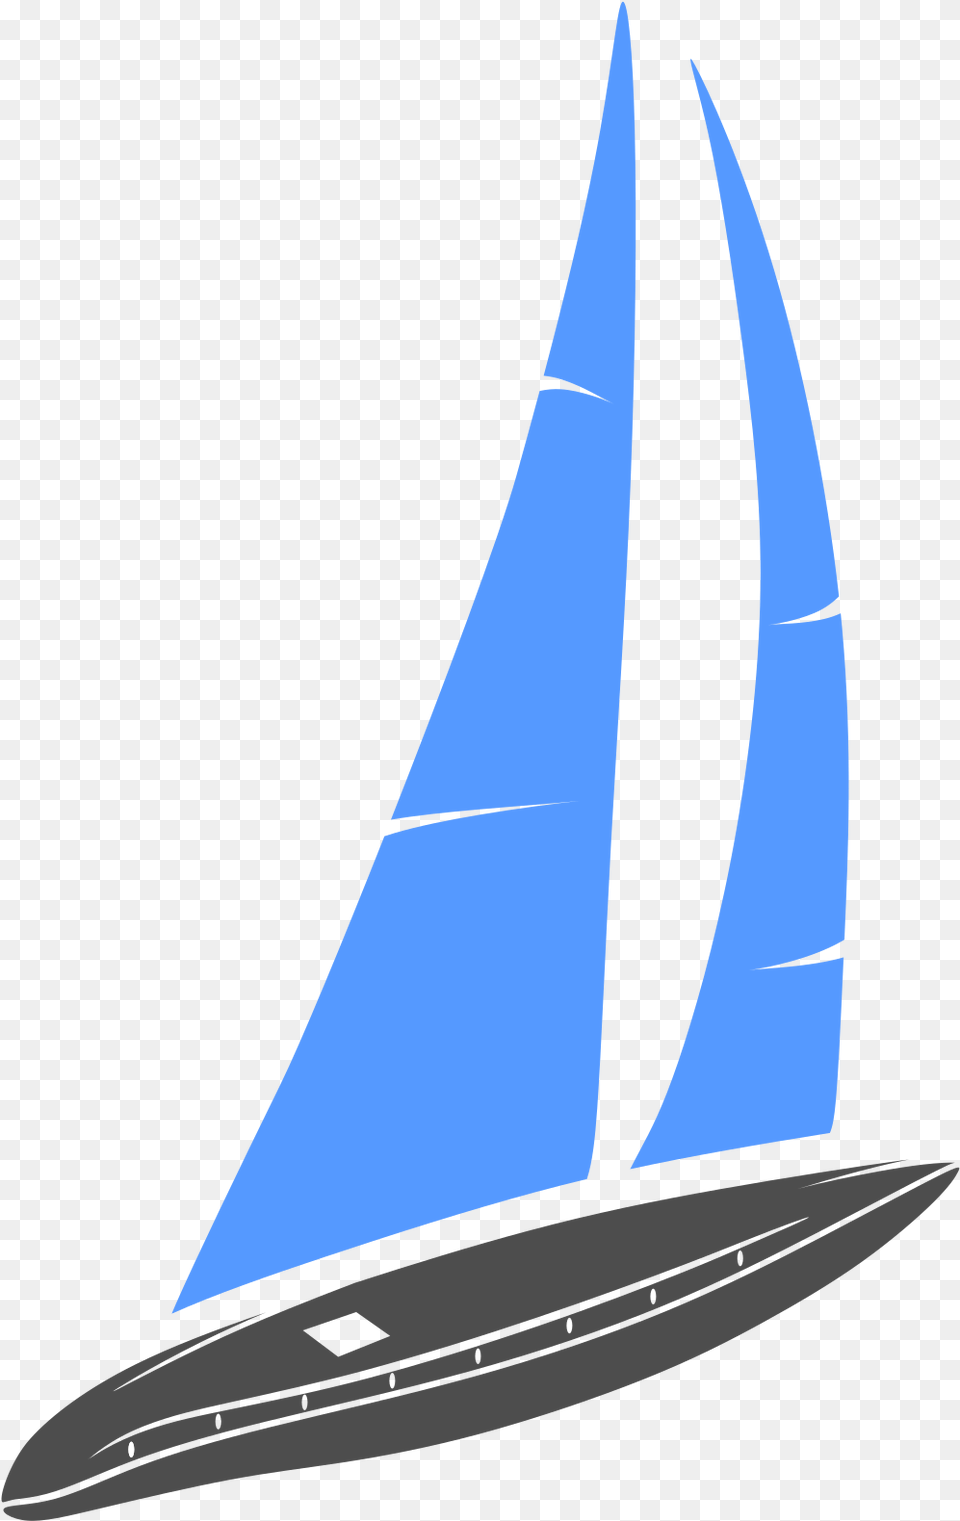 Sail Boat Vector Logo Template Sail, Sailboat, Transportation, Vehicle, Yacht Free Png Download